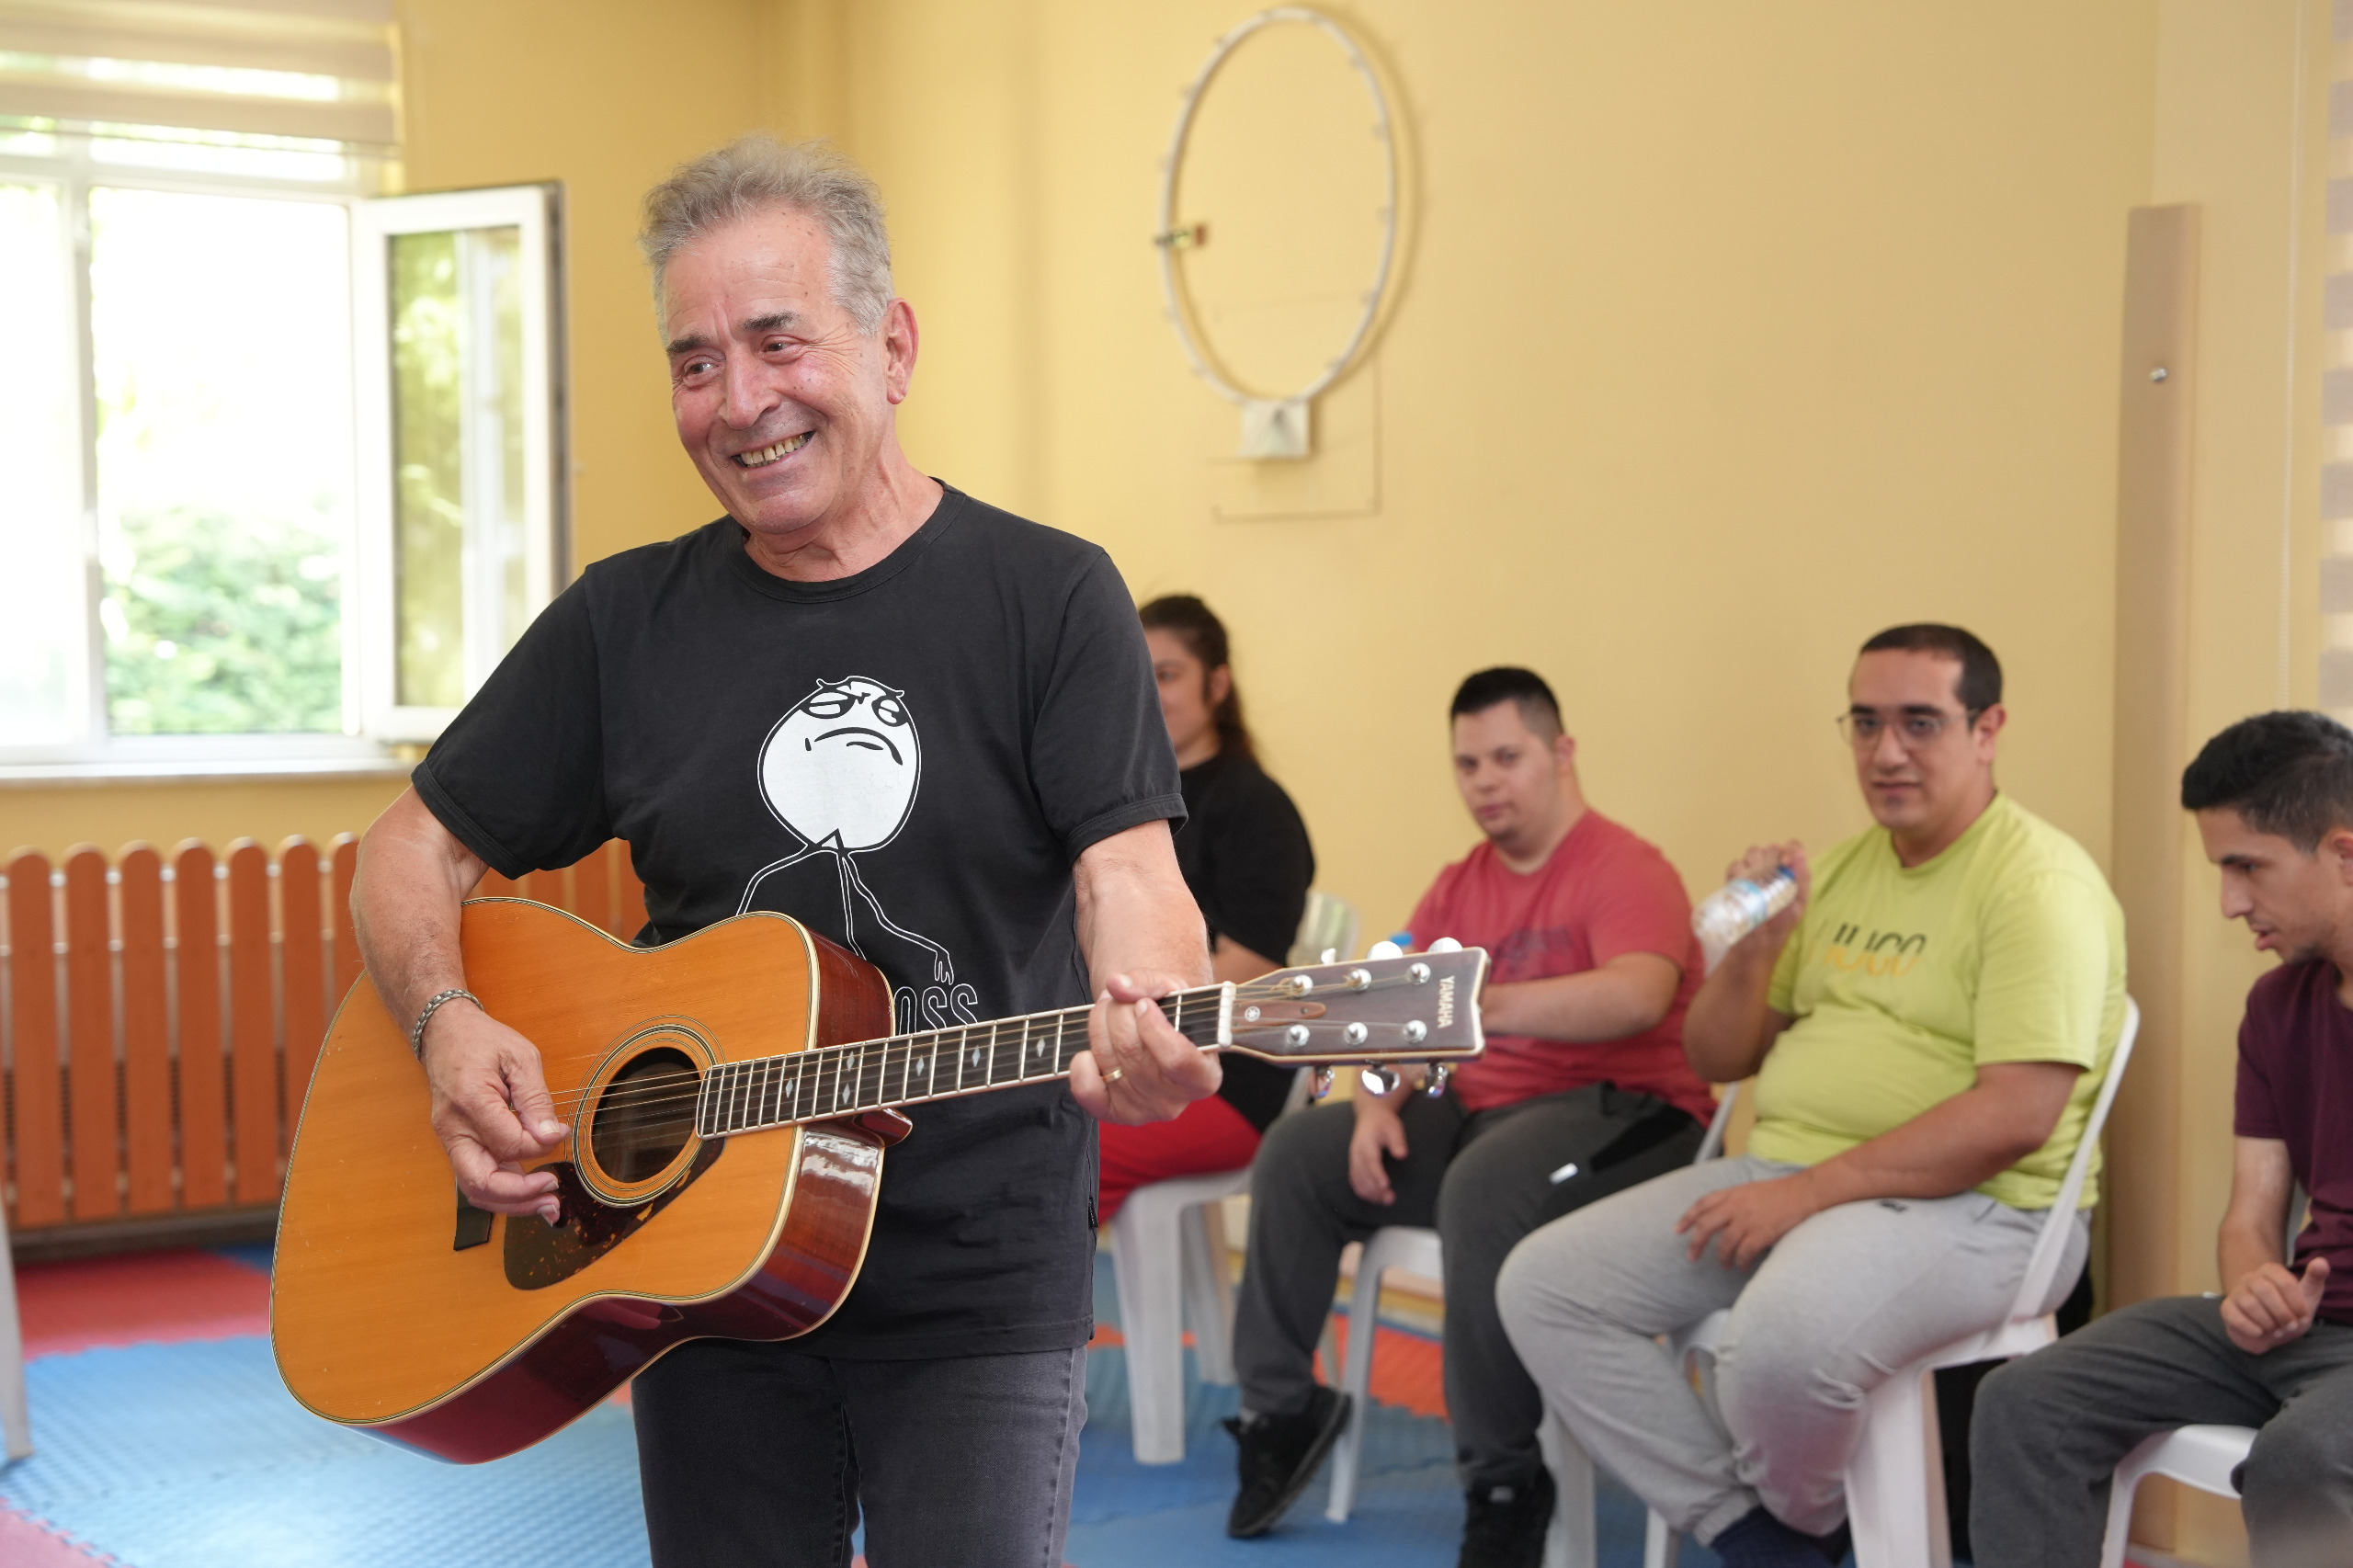 Eskişehir’de “Nörokreatif Müzik Terapi Deneyimleme Atölyesi” düzenlendi